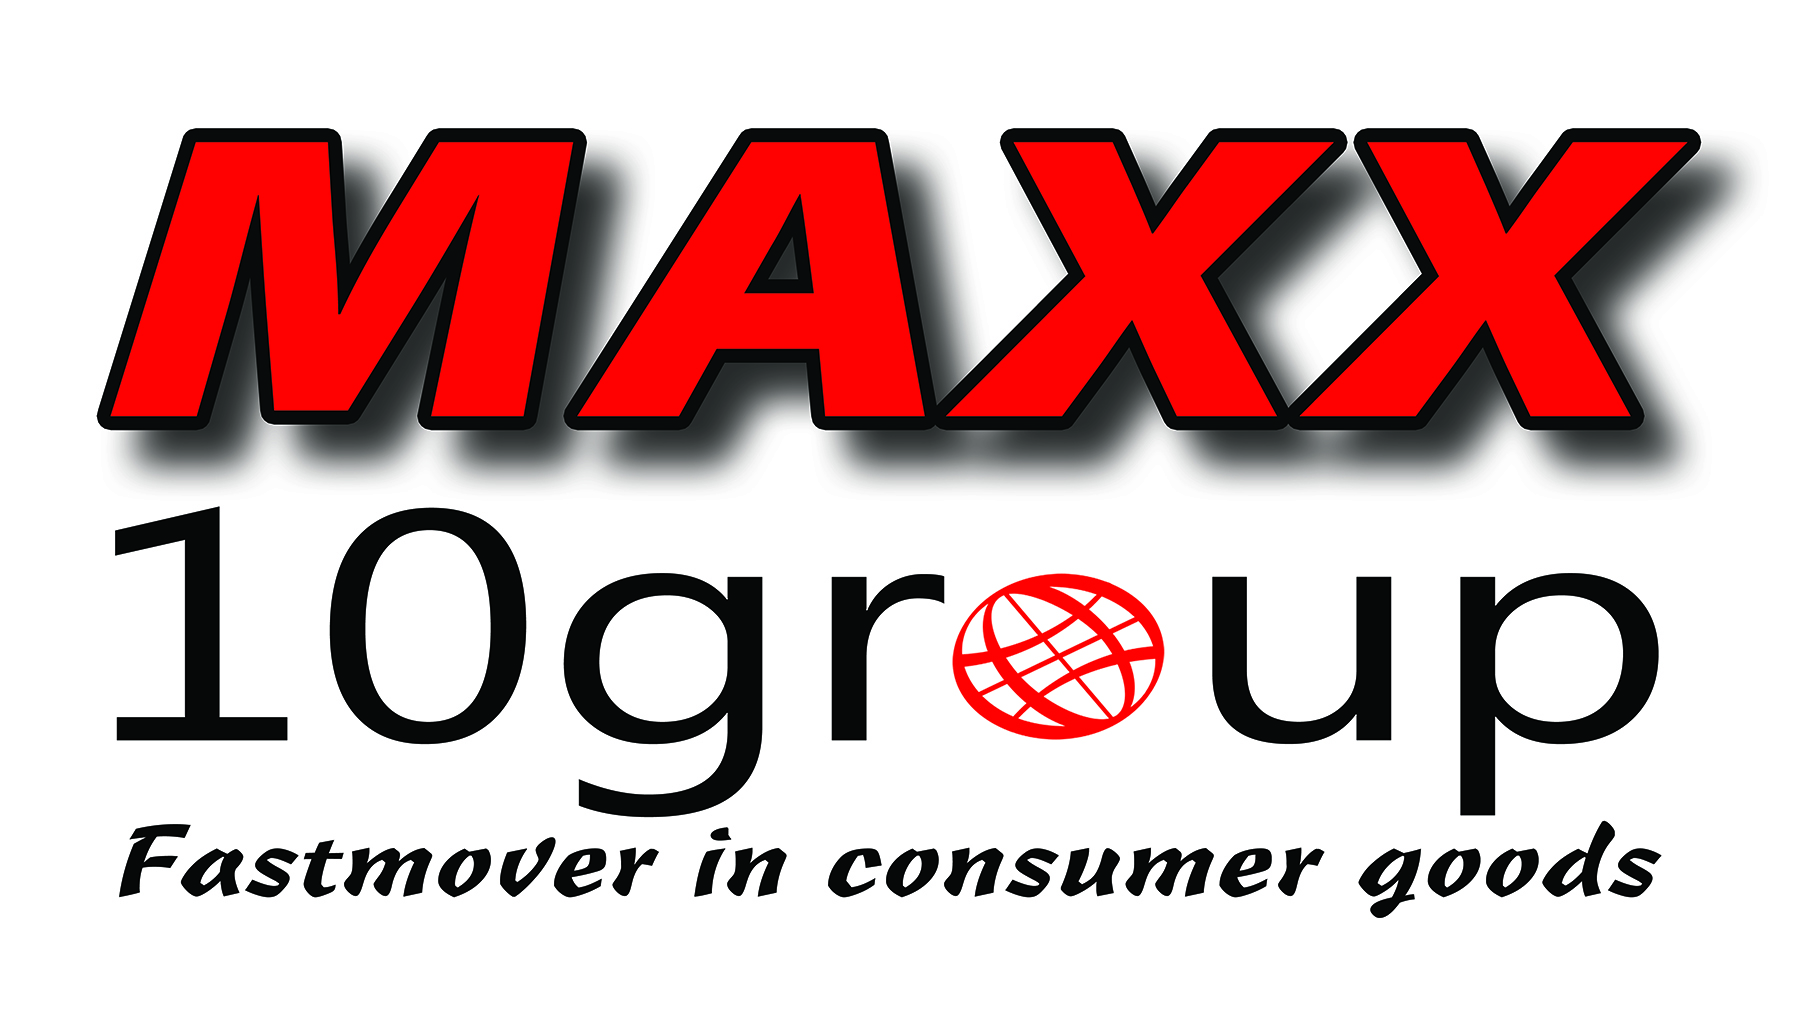 Maxx10Group – Sprzedaż hurtowa i import towarów z UE